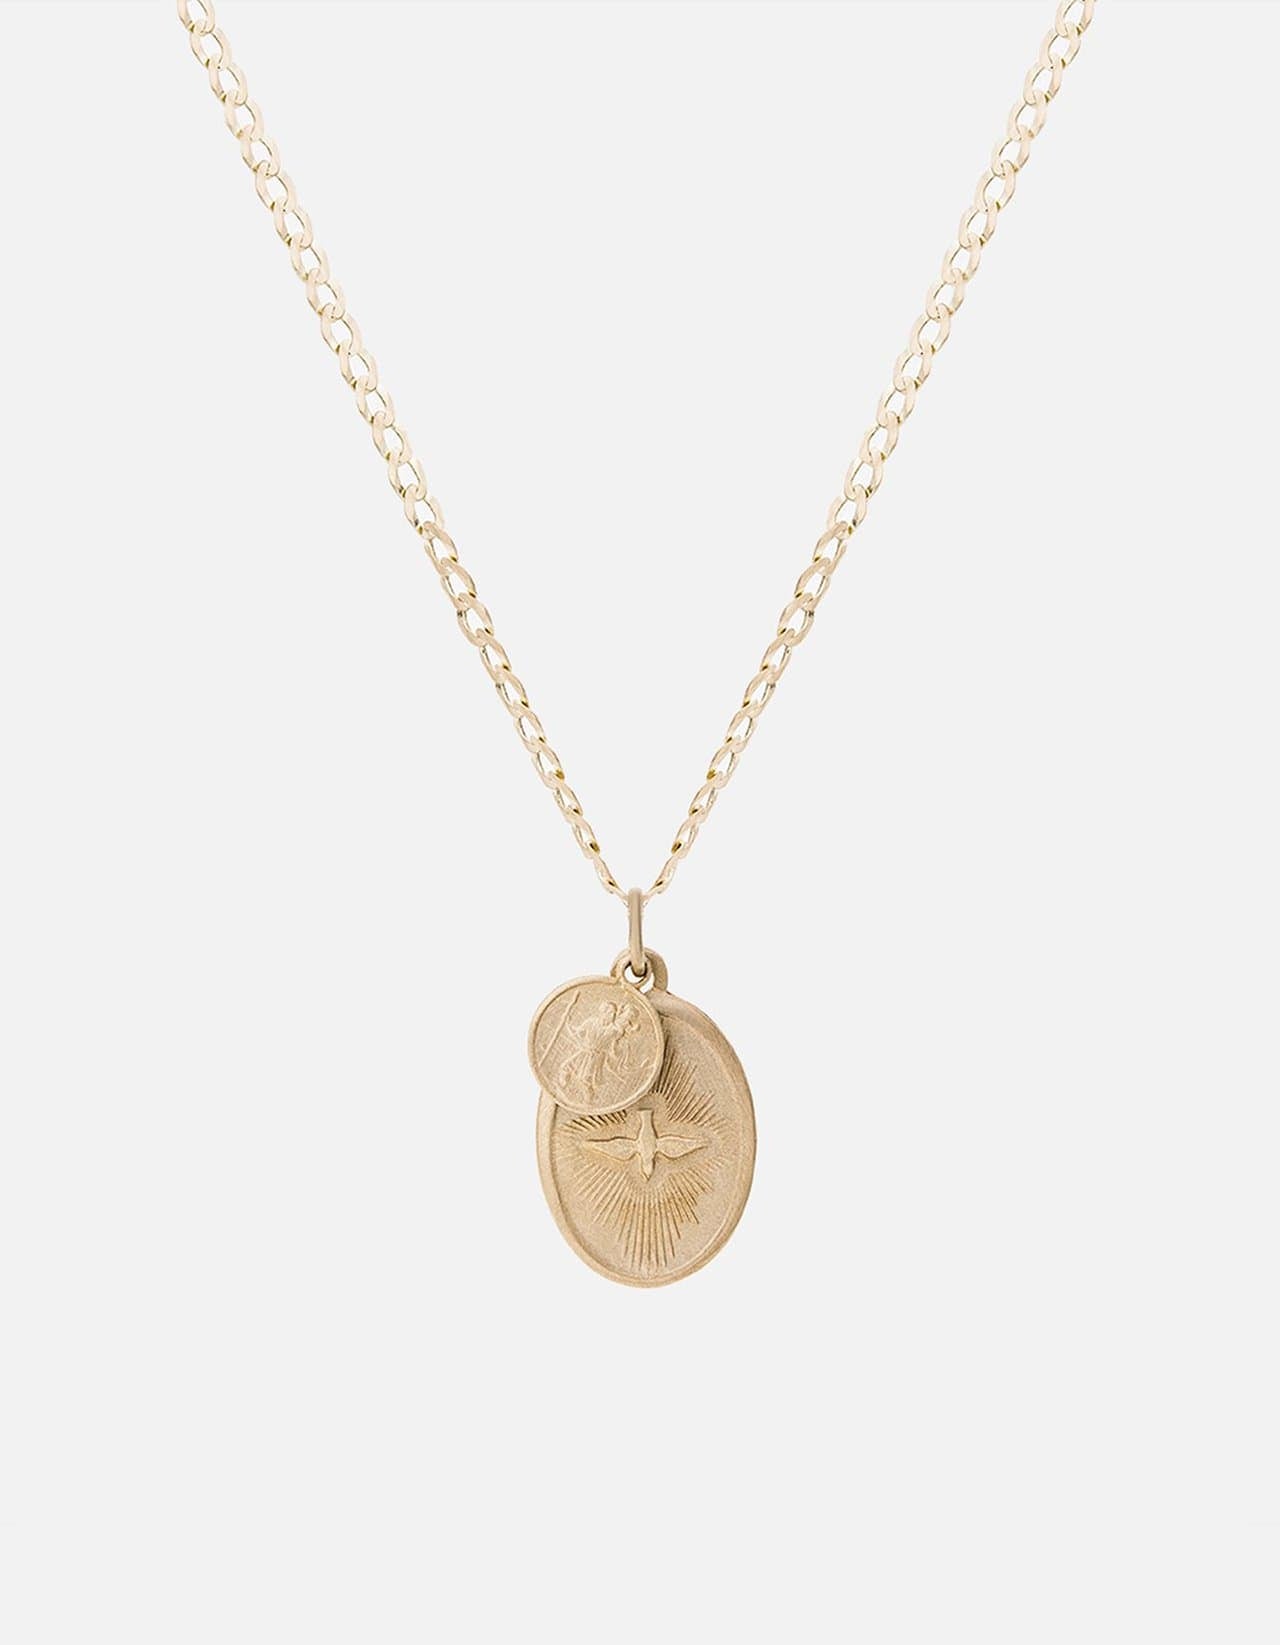 Dove Pendant Necklace, 14k Gold | Men's Necklaces | Miansai